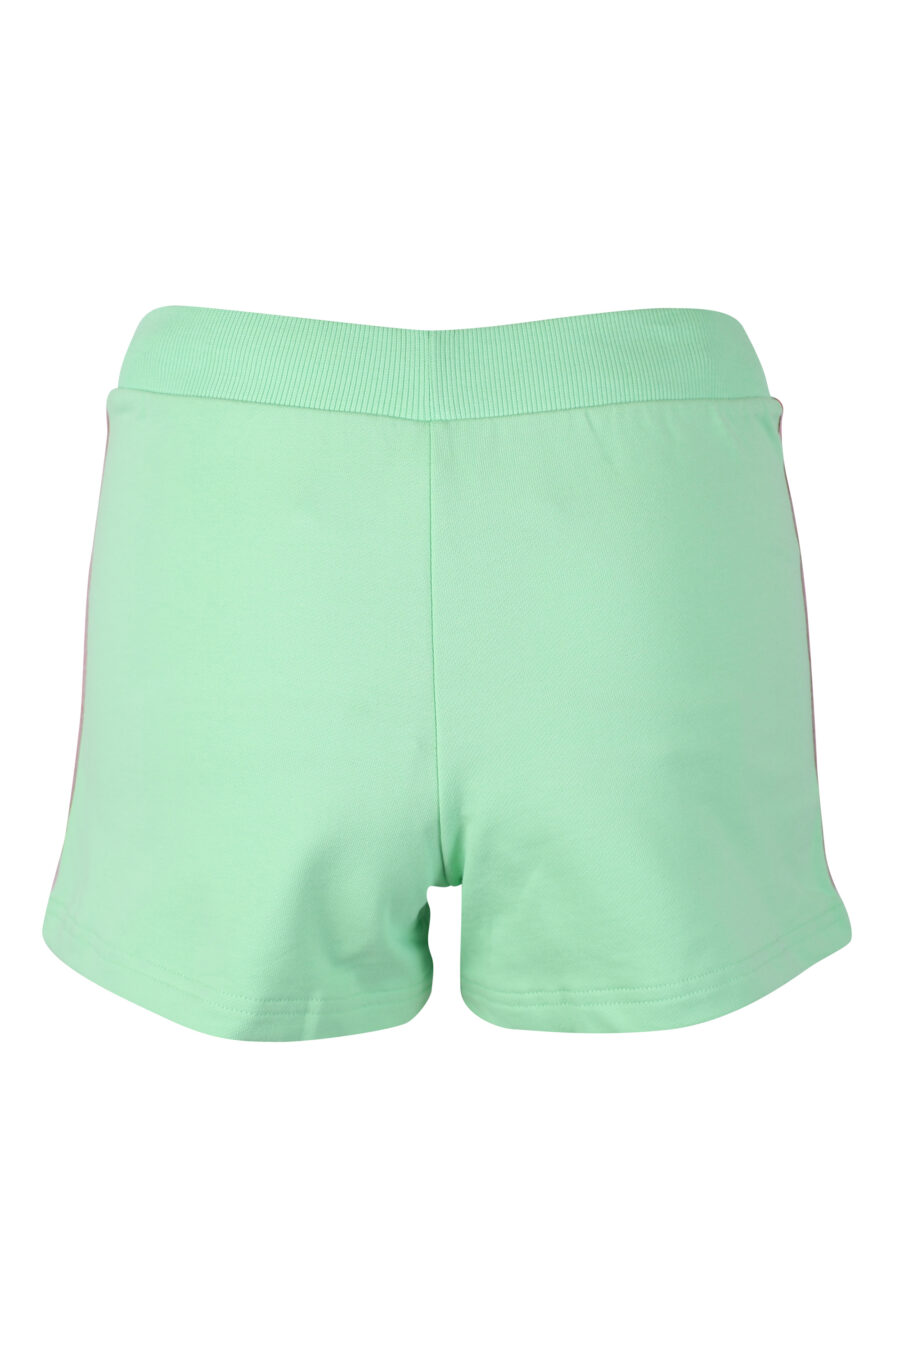 Pantalón de chándal corto verde menta con logo oso underbear - IMG 2299